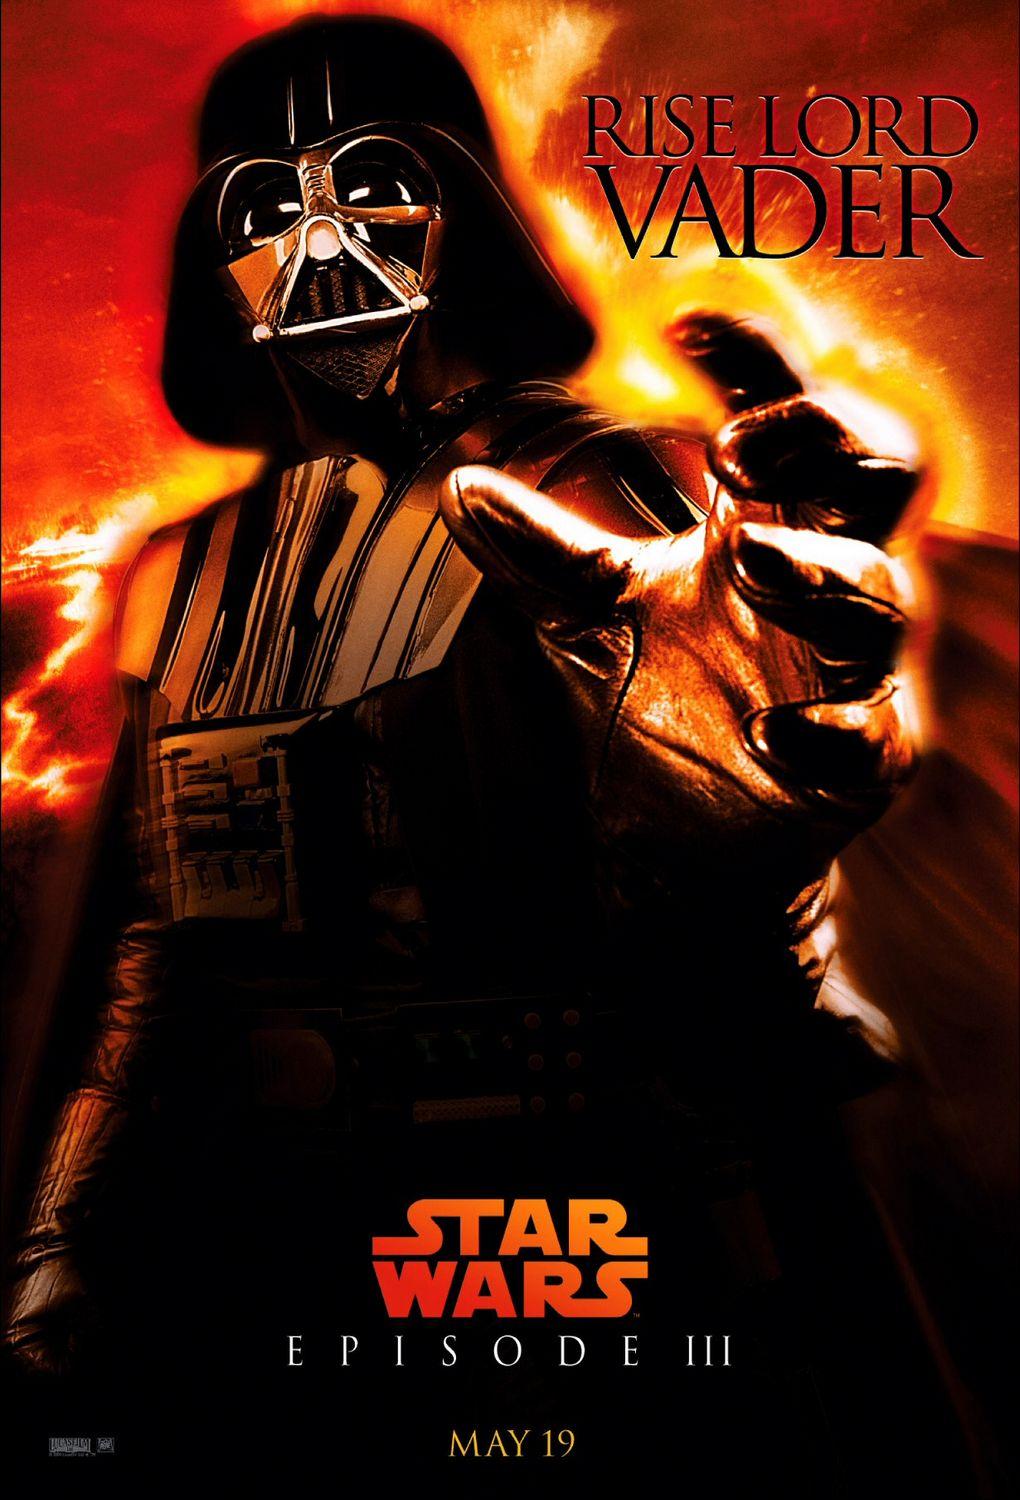 Постер фильма Звездные войны: Эпизод 3 - Месть Ситхов 3D | Star Wars: Episode III - Revenge of the Sith